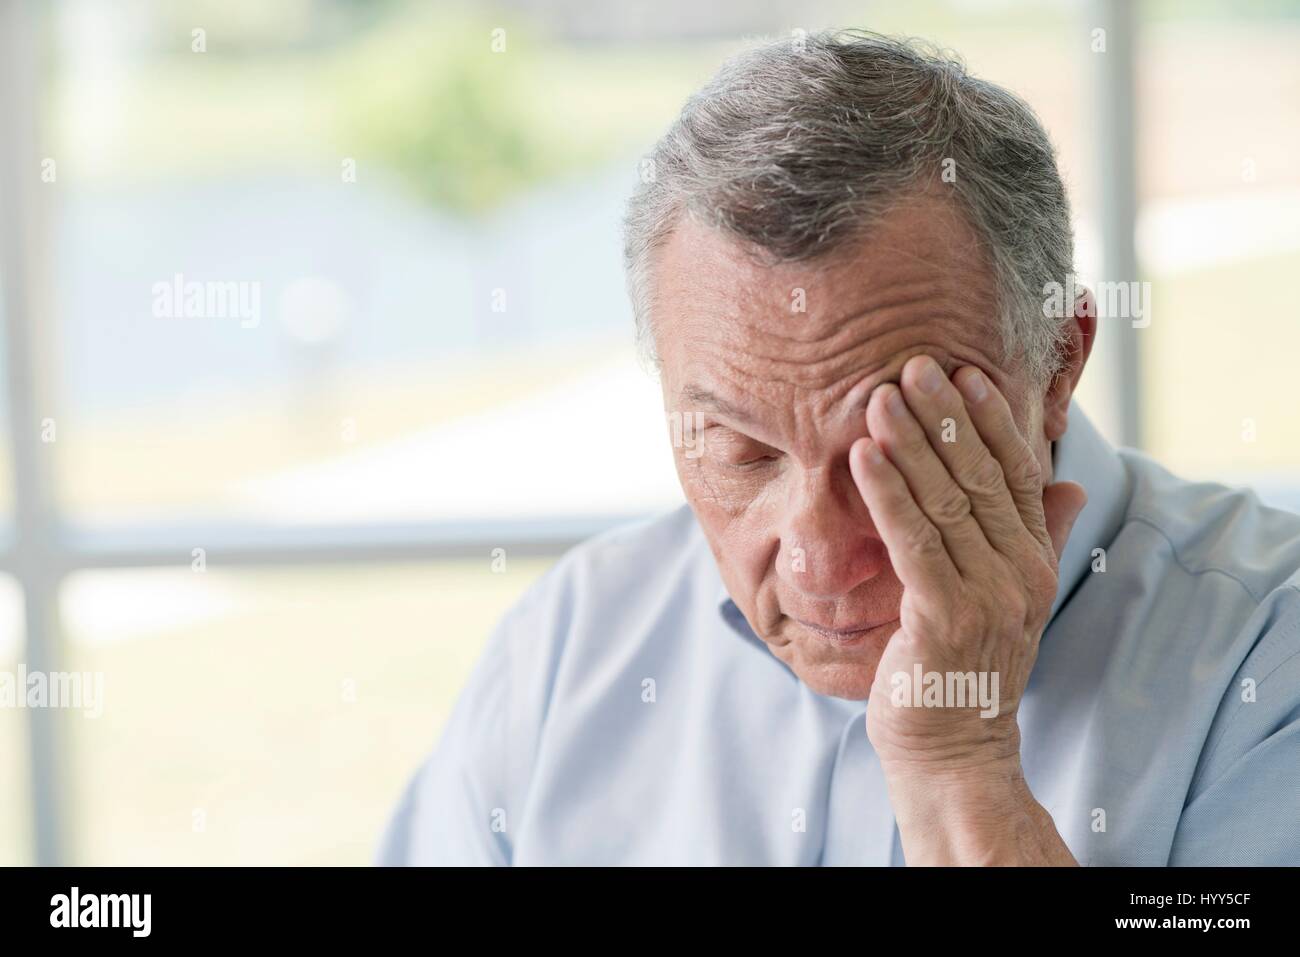 Senior man rubbing face. Stock Photo